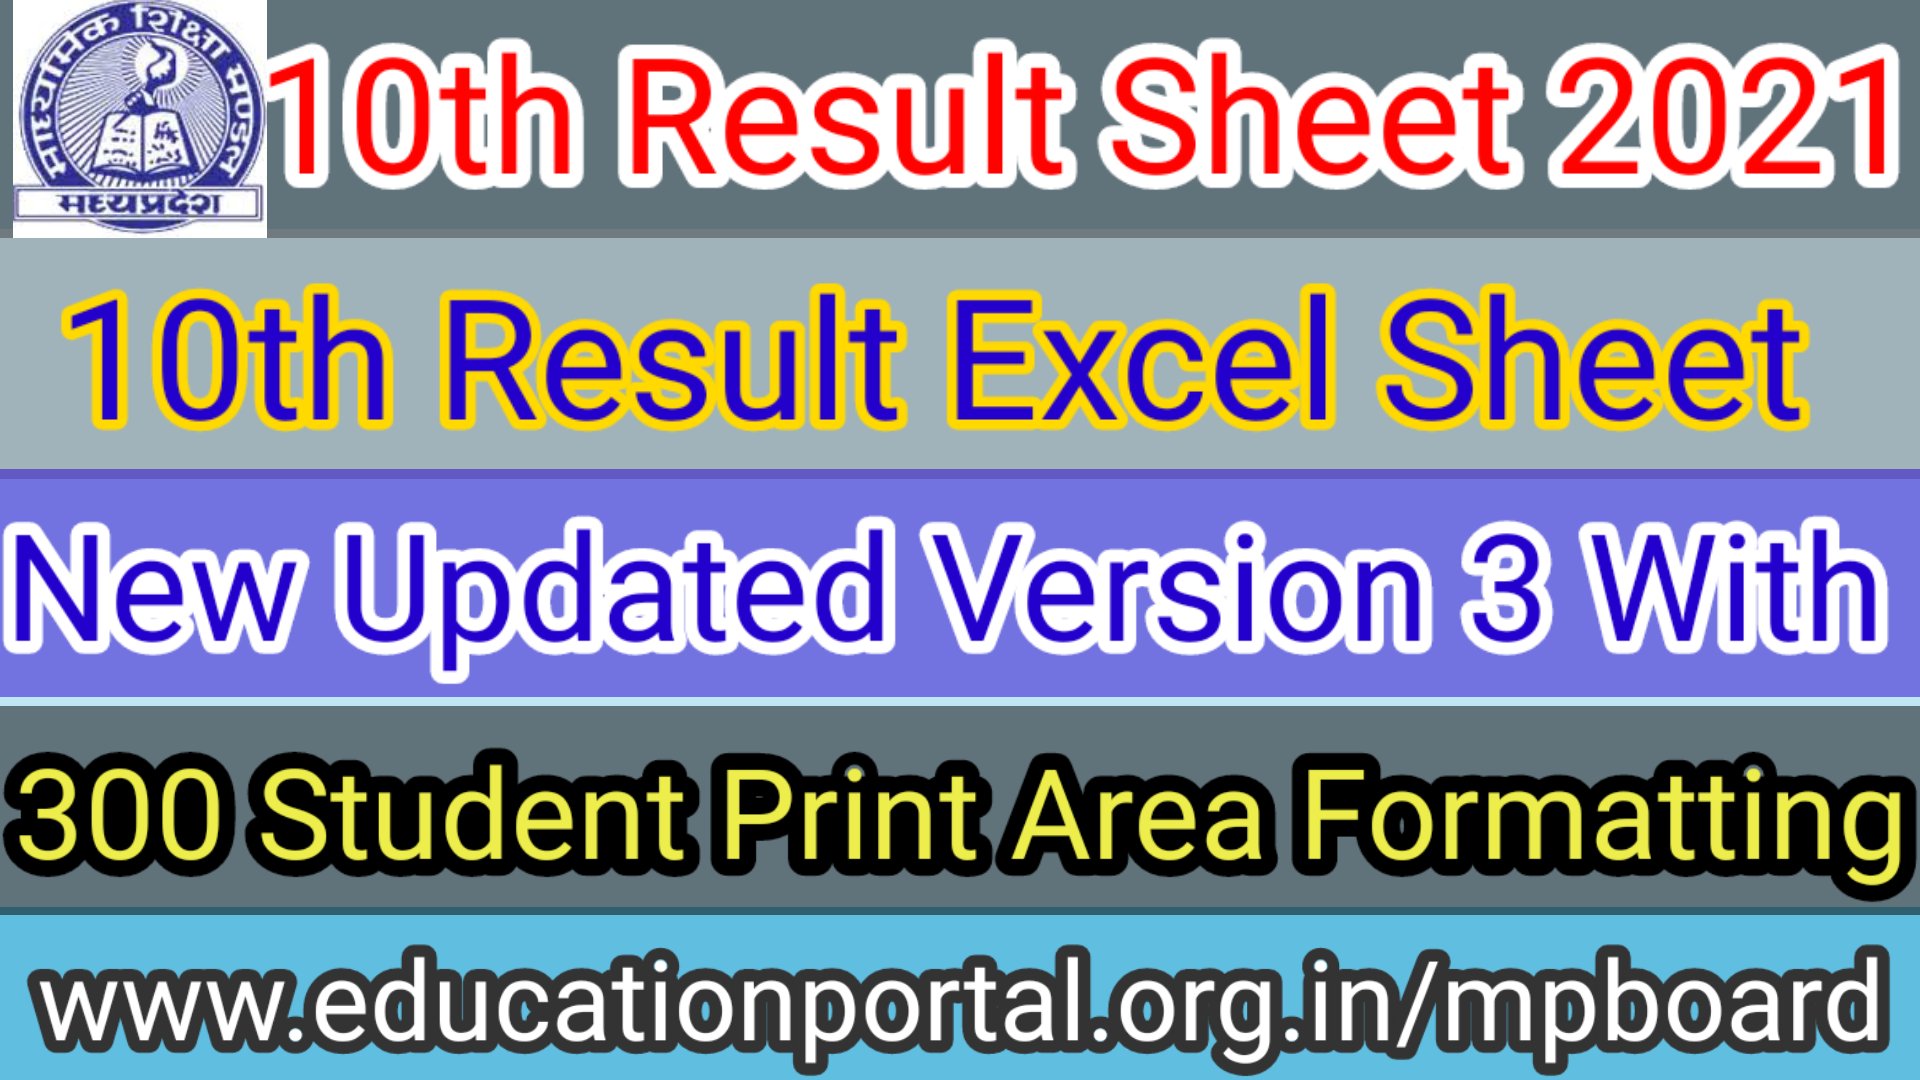 Mp Board Class 10th Result Excel Sheet Version 3 with Print Setup, Formatting, 300 Students Entry, Vocational Subject & Much more कक्षा दसवीं का रिजल्ट तैयार करने के लिए न्यू अपडेटेड एक्सेल शीट Version 3 डाउनलोड करें_* नमस्कार साथियों आप लोगों के सुझावों एवं कमैंट्स को ध्यान में रखते हुए कक्षा दसवीं का रिजल्ट तैयार करने के लिए न्यू एक्सल शीट वर्जन 2 में संशोधन किया जाकर वर्जन 3 लांच किया गया है. *Mp Board Class Result Excel Sheet Version 3 इस एक्सेल शीट में आप पाएंगे* *🌈Print Setup* *🌈Cell, Row, Column Formatting* *🌈 300 छात्रों की एंट्री* *🌈 जन्म दिनांक Formatting त्रुटि में सुधार* *🌈Vocational Subject Entry* *🌈Waitage मार्क का निर्धारण* *🌈बेस्ट ऑफ़ फाइव अनुसार रिजल्ट* *🌈इस वर्ष के औसत अंक की गणना* *🌈औसत अंक बेंचमार्क की तुलना* *🌈बेंचमार्क bug removal* *🌈जानकारी का गोश्वारा* *🌈Vocational Subject Students Calculation* *🌈 वोकेशनल सब्जेक्ट ओएमआर शीट में माध्यमिक शिक्षा मंडल के निर्देशानुसार 60% प्रो reta बेसिस कैलकुलेशन*